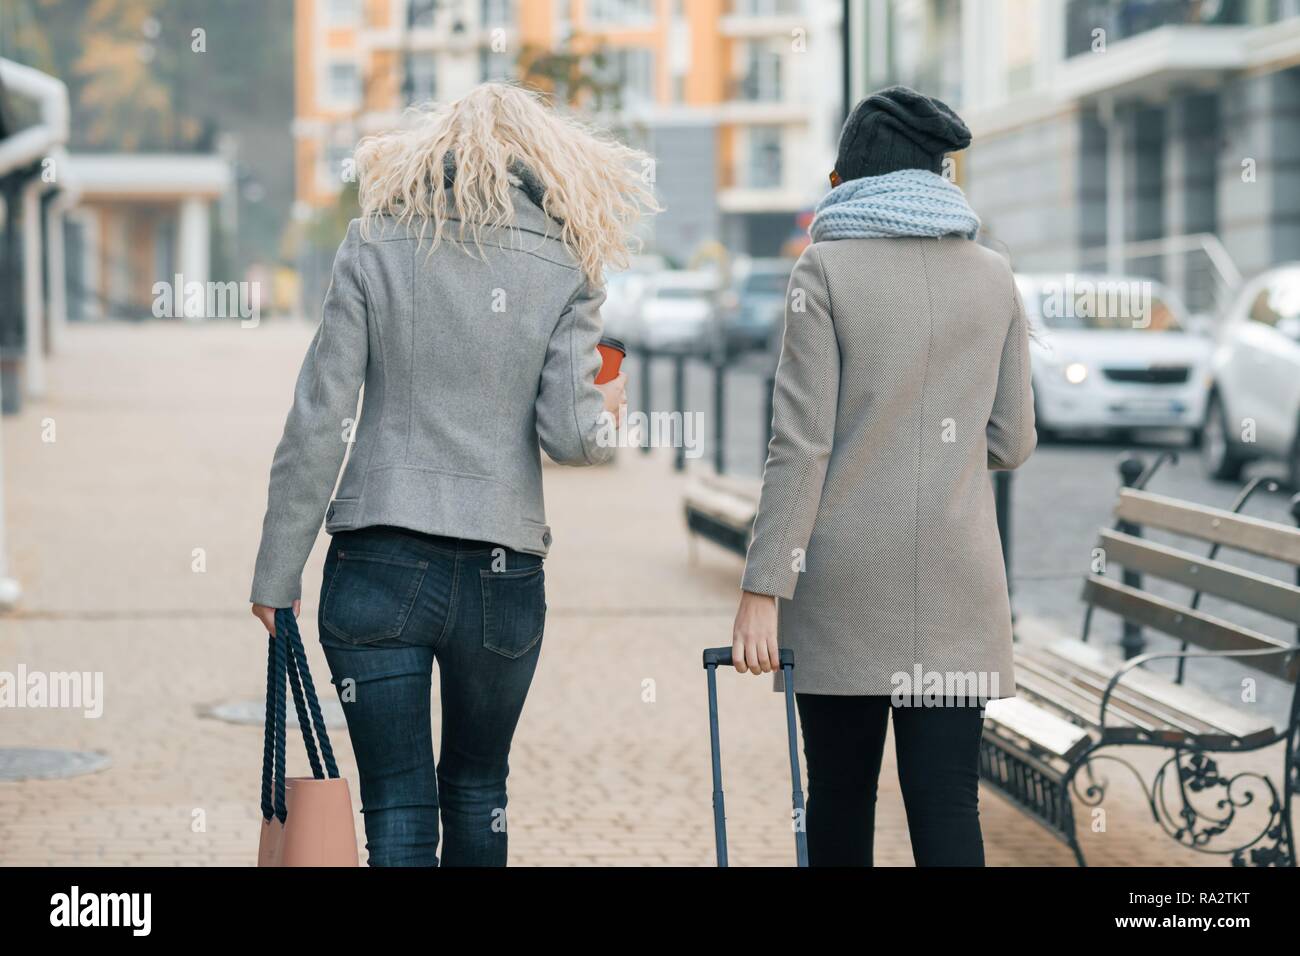 Dos jóvenes mujeres hermosas en ropa de abrigo por las calles de ciudad con una de viaje, la mujer riendo y hablando, vista desde la de atrás Fotografía